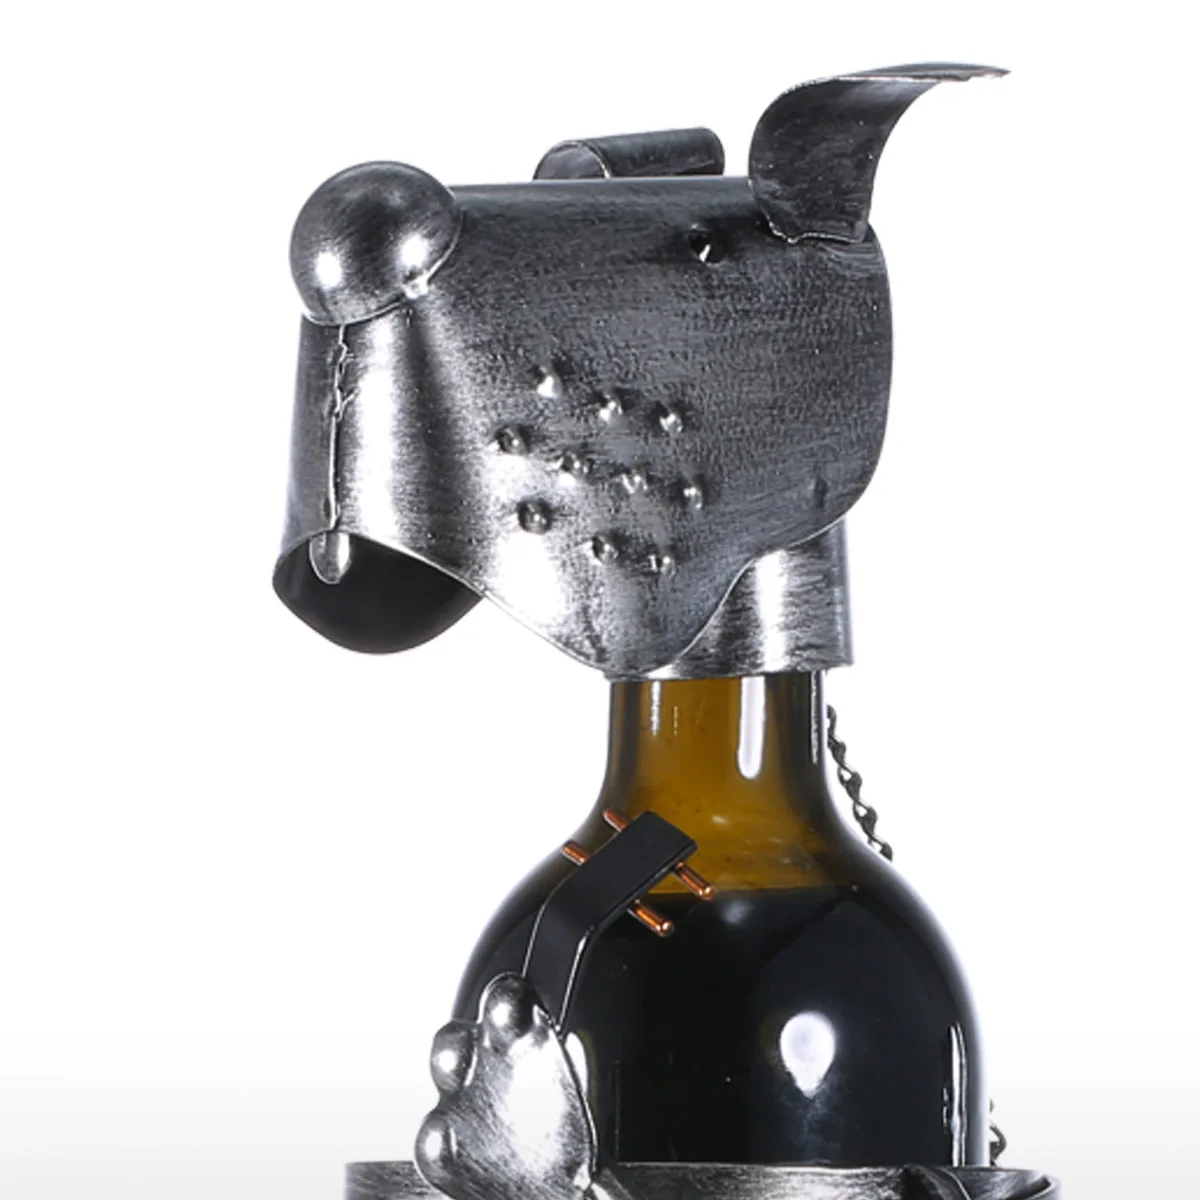 Tooarts щенок винный шкаф с музыкальной лентой Современная фигурка животного винные держатели креативный винный стенд подарок украшение дома аксессуары